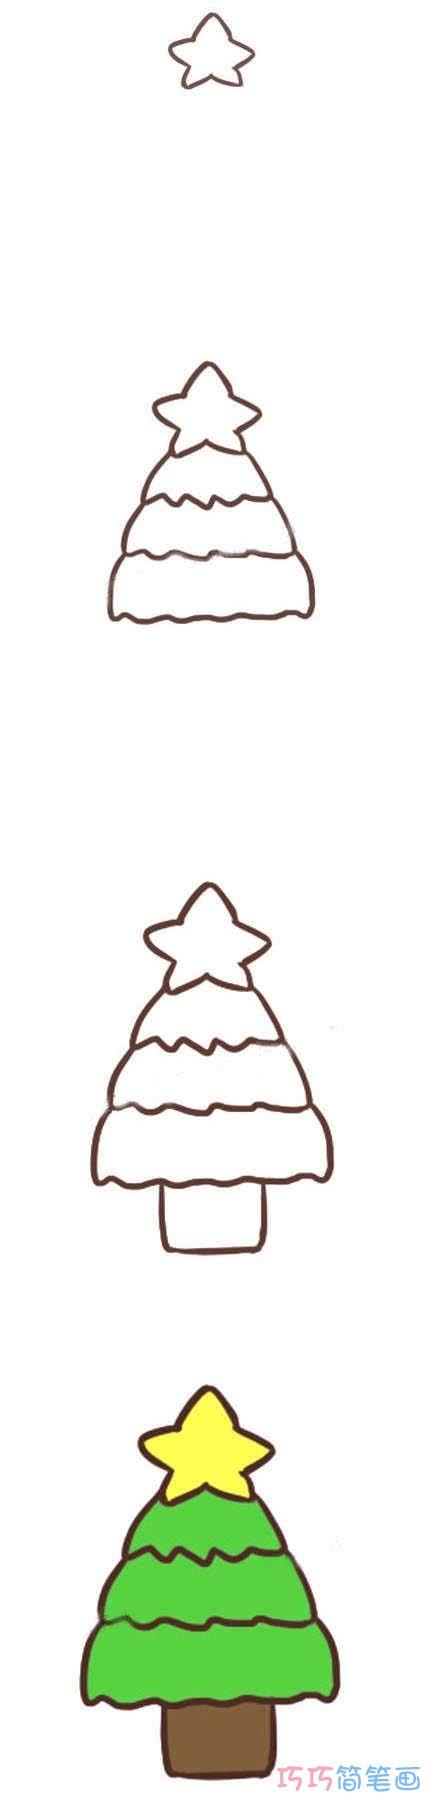 幼儿简笔画圣诞树的画法步骤涂颜色简单漂亮 - 小手画堂